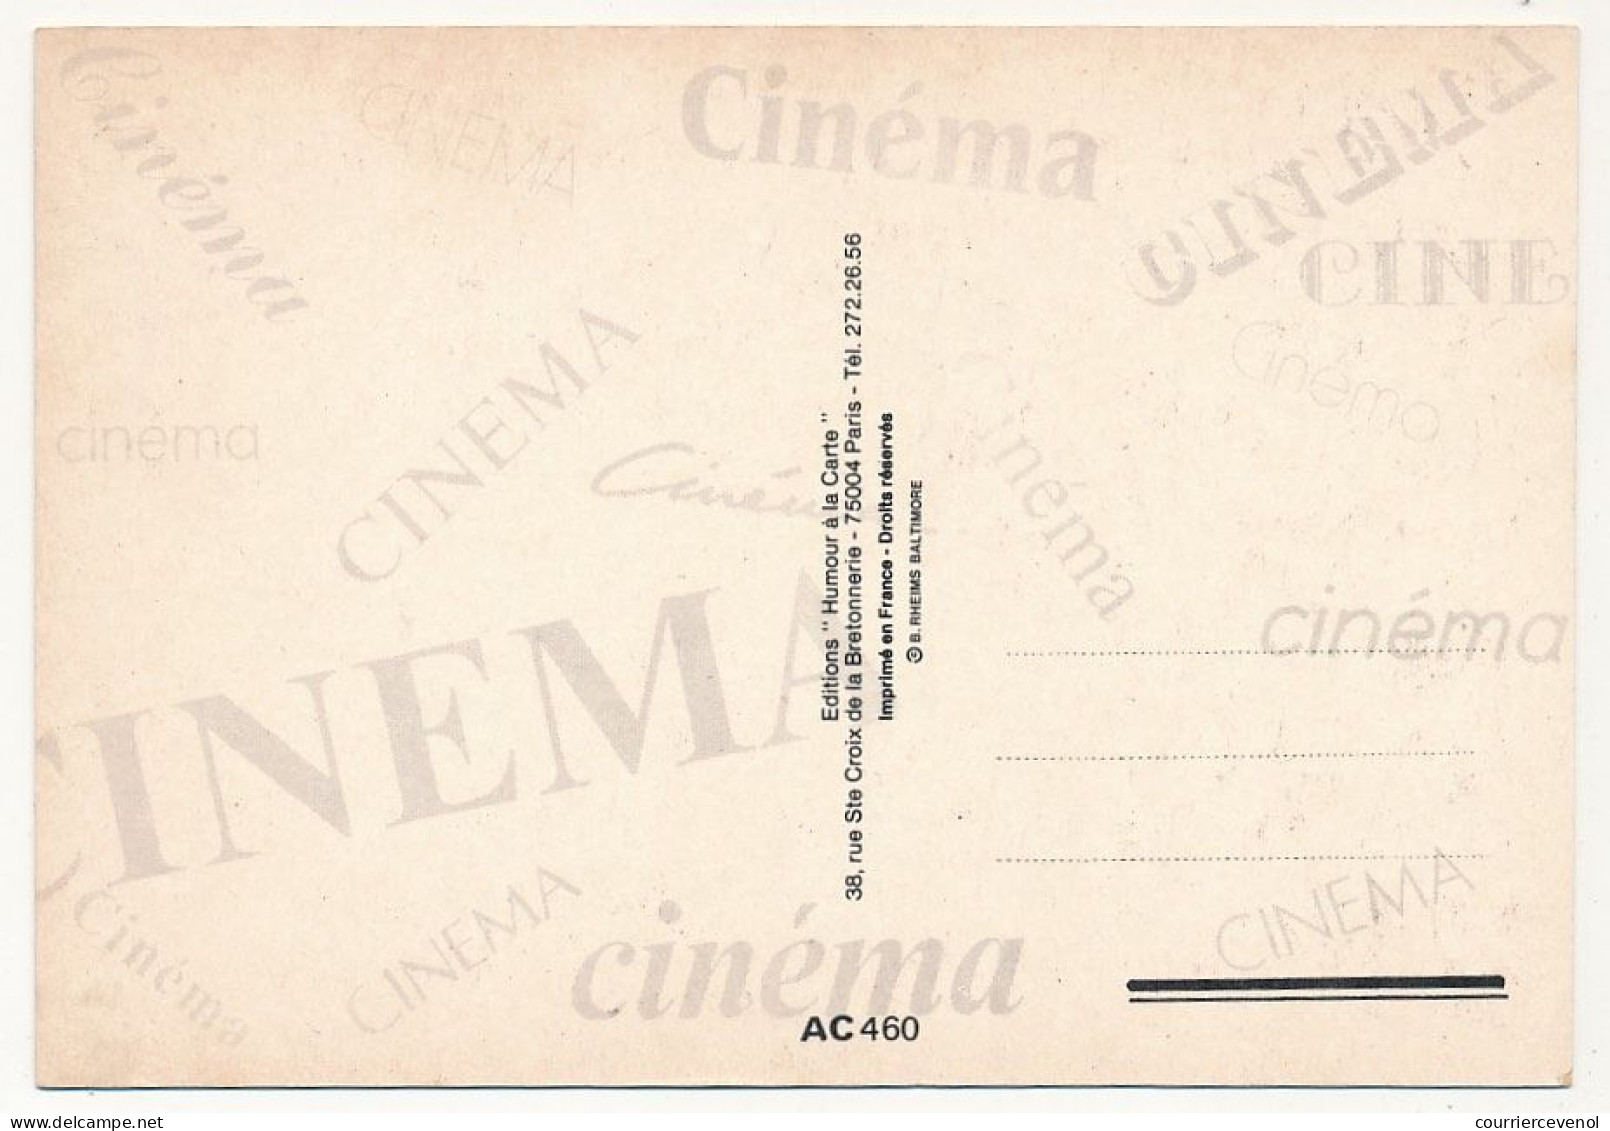 CPM - Reproduction D'affiche De Film - Rendez-vous (Lambert Wilson, Juliette Binoche, Jean-Louis Trintignant) - Posters On Cards